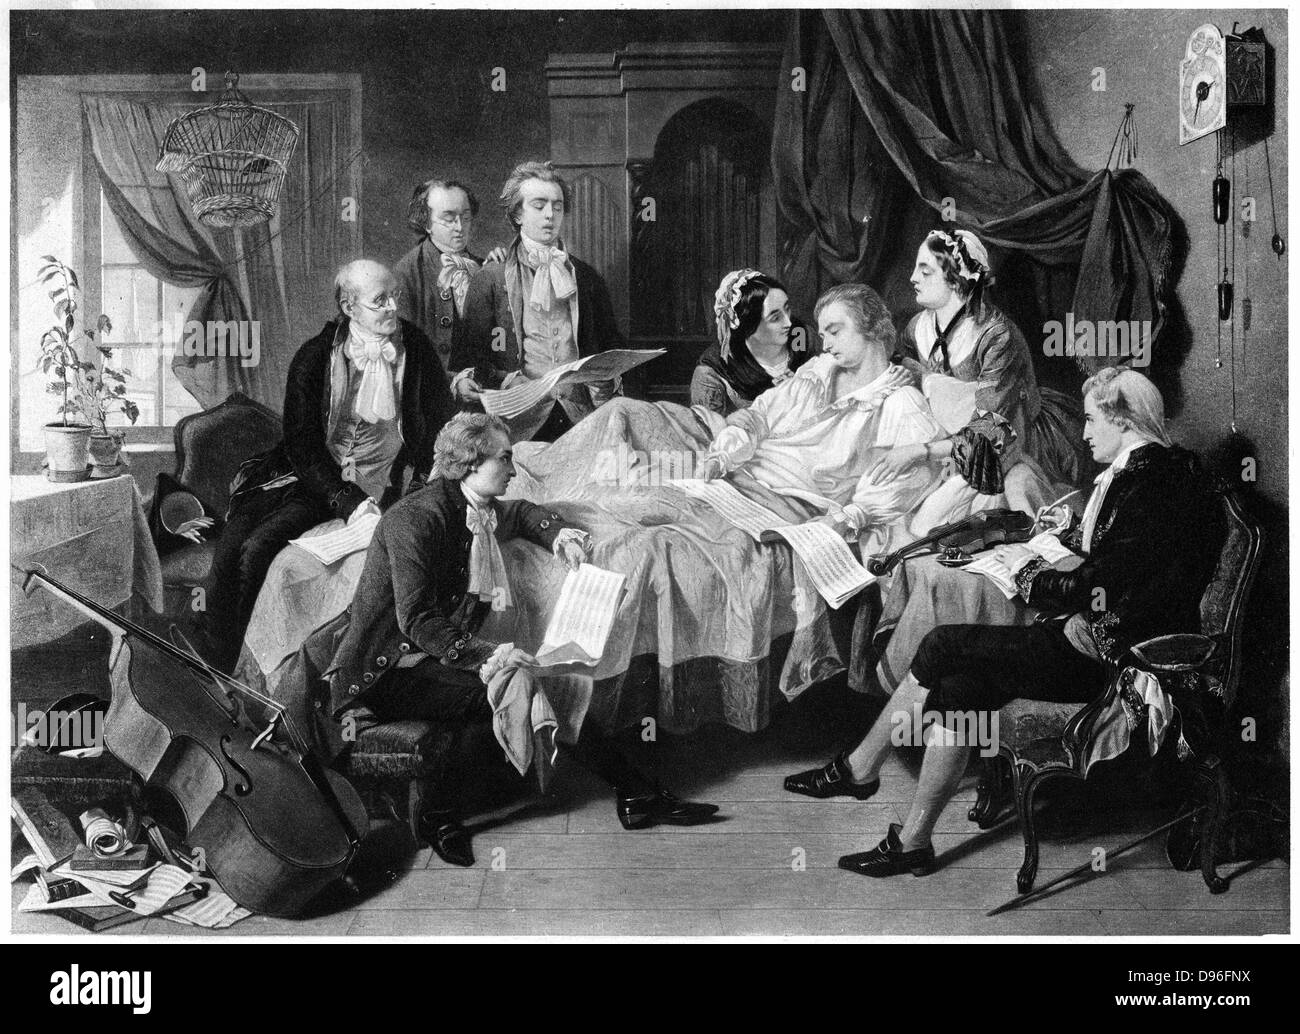 La mort de Mozart 1791' (fin du 19e siècle). Wolfgang Amadeus Mozart  (1756-1791), compositeur autrichien sur son lit de mort entouré de sa femme  et de ses amis. Les feuilles de musique